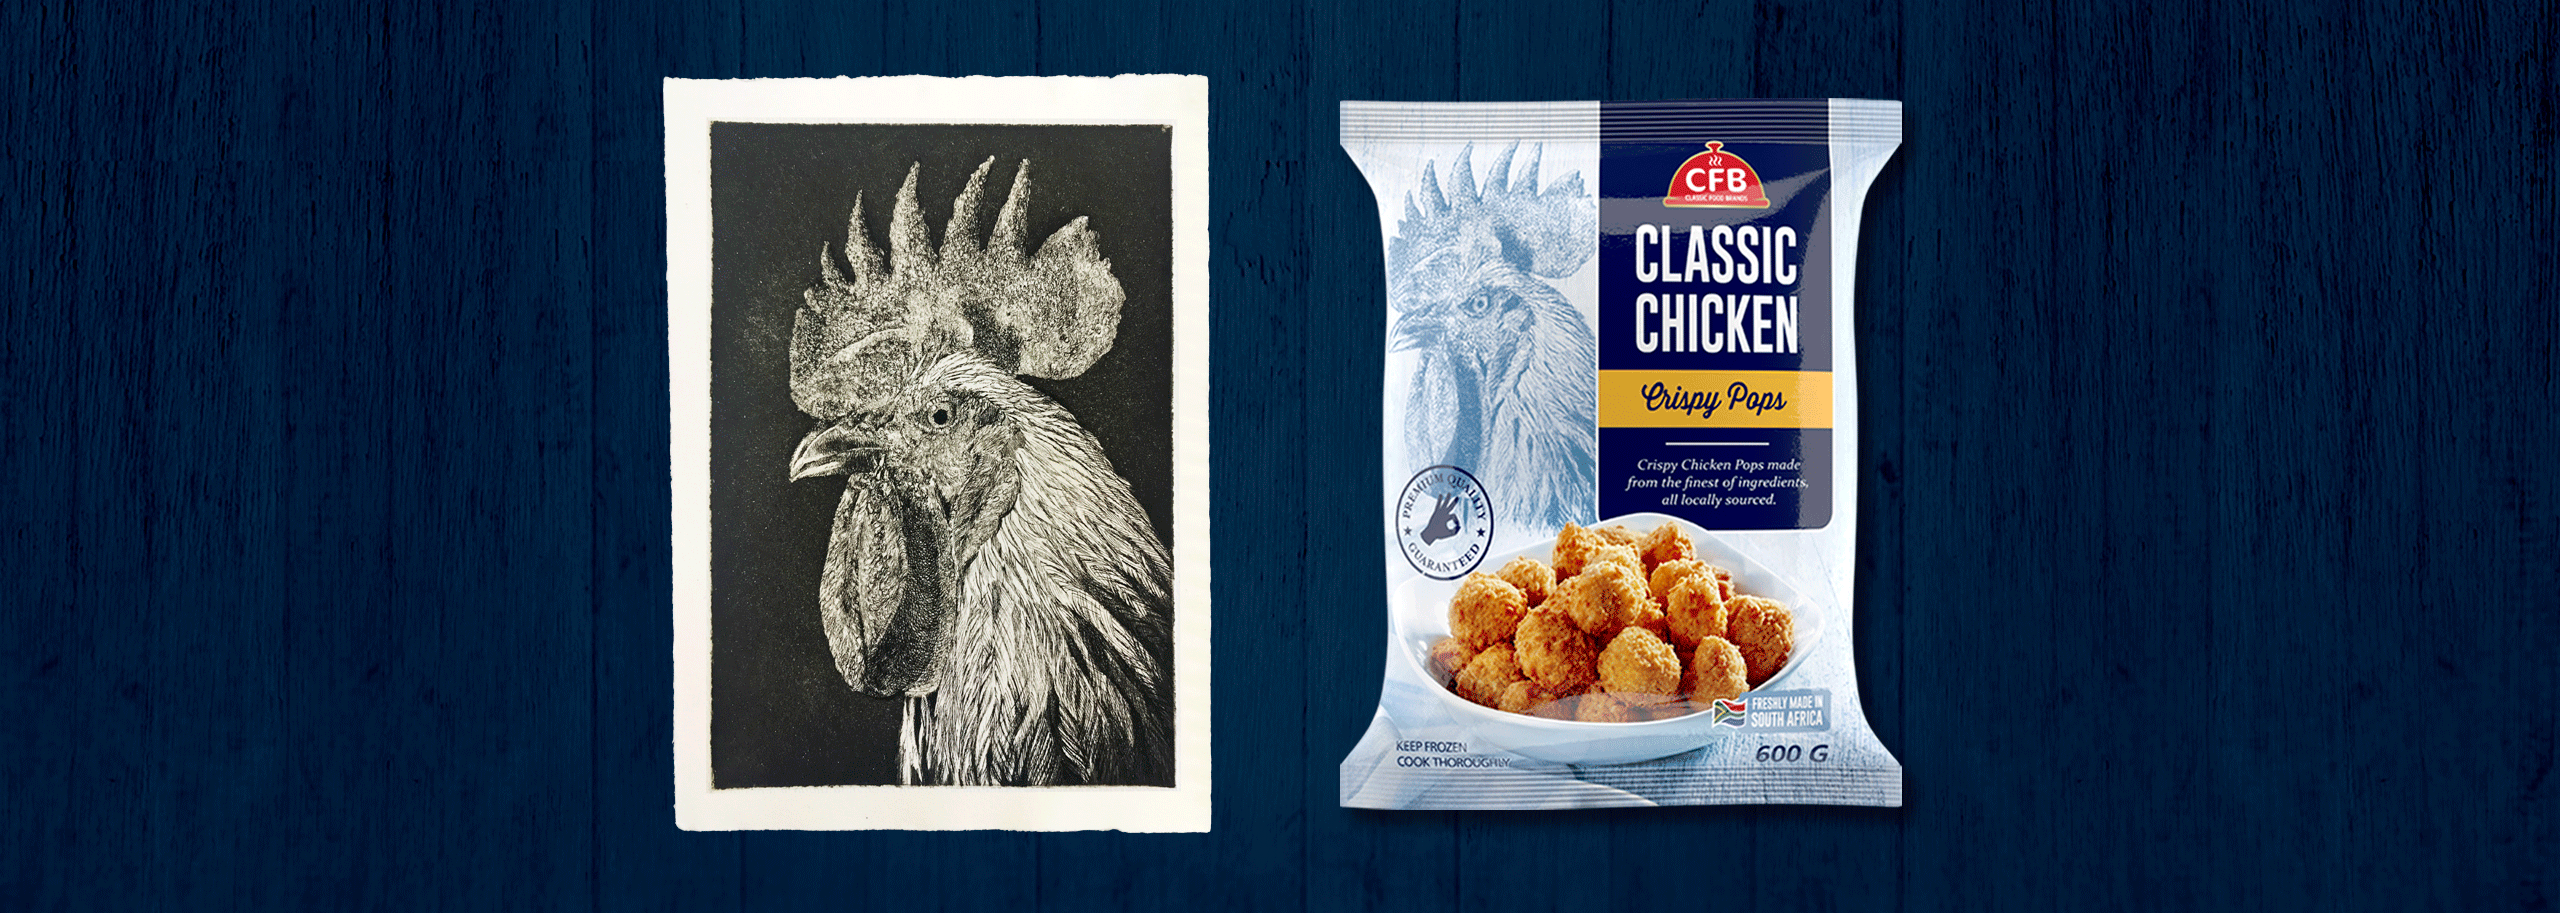 CFB Crispy Chicken Packaging-3